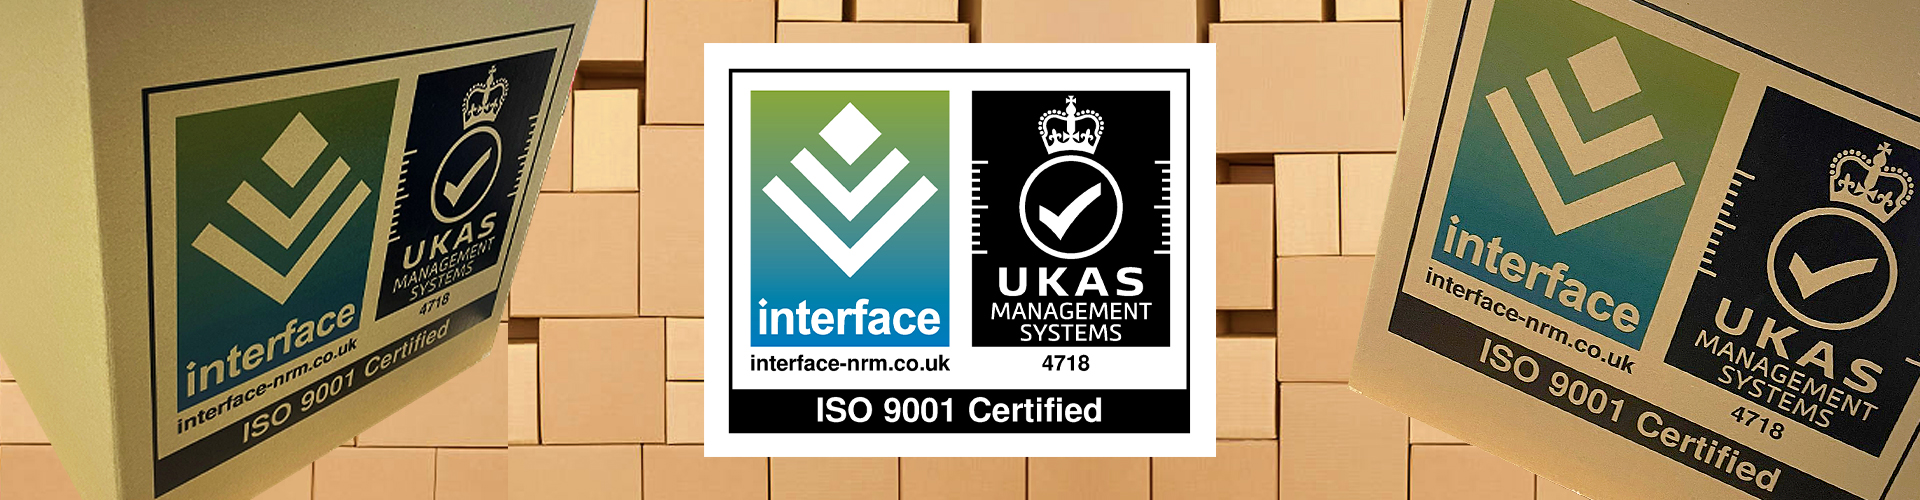 Image showing ISO 9001 logo